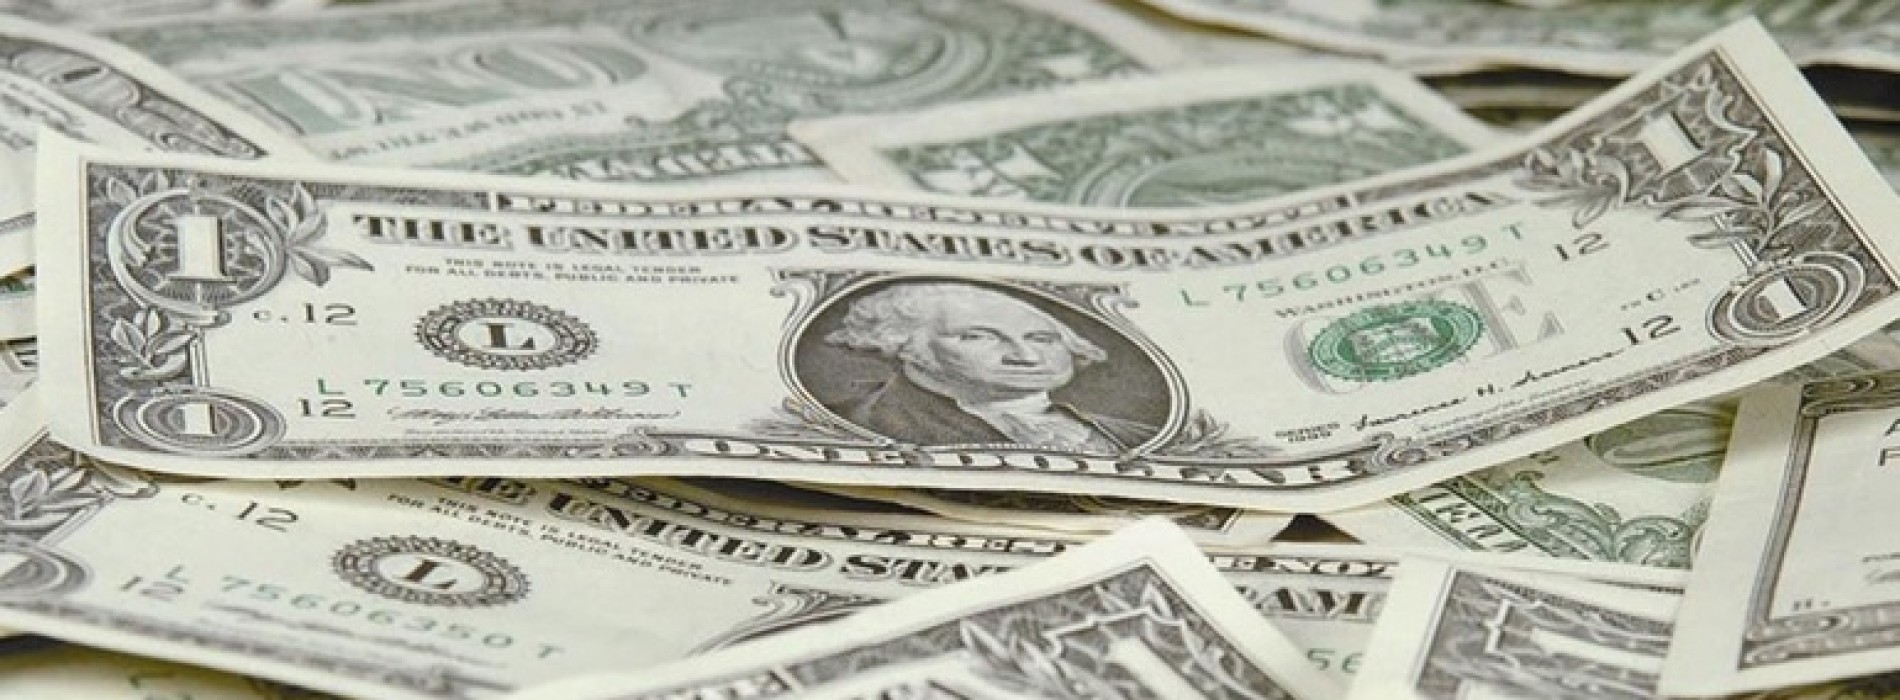 Poranny komentarz walutowy – dolar nadal słaby